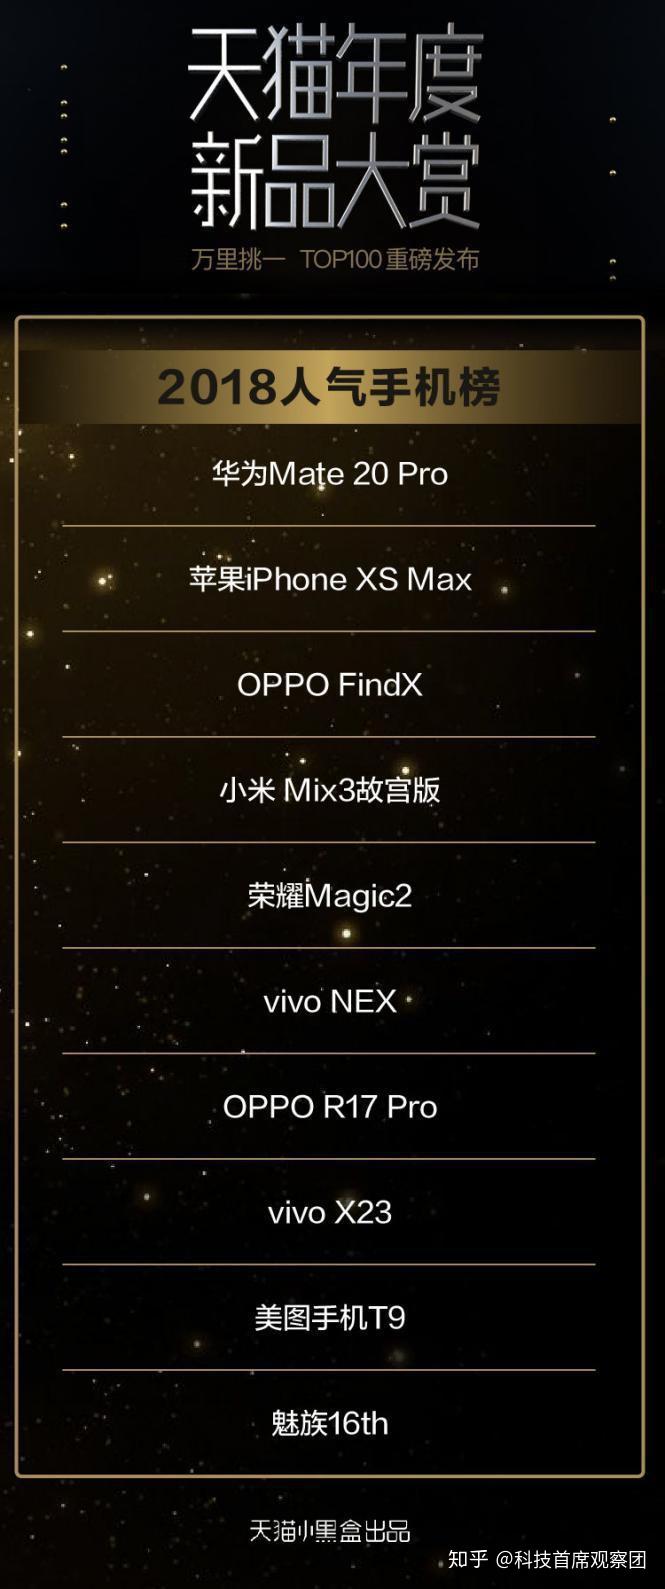 美图t9入围天猫2018年度最佳新品榜单top100,国货手机崛起!